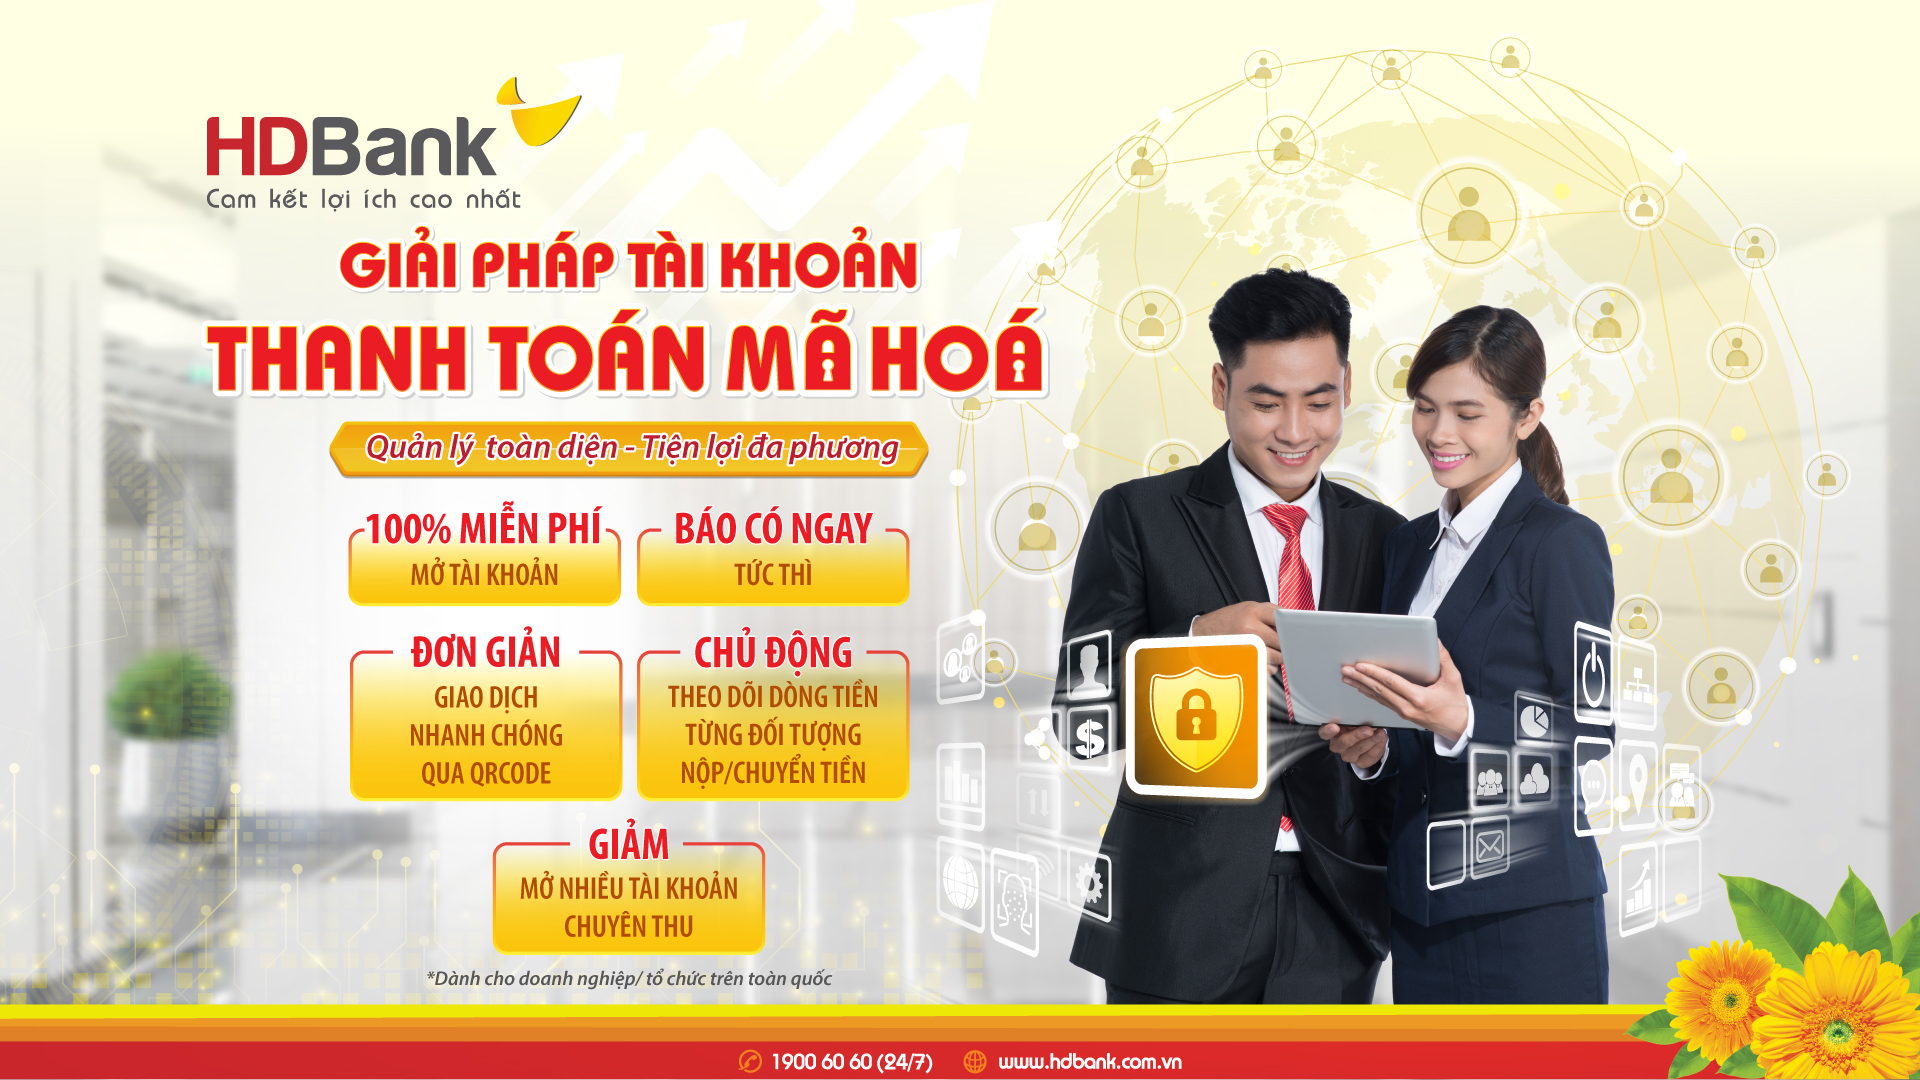 HDBank ưu đãi khách hàng doanh nghiệp mới vay lãi suất 6,3%/năm - Ảnh 1.